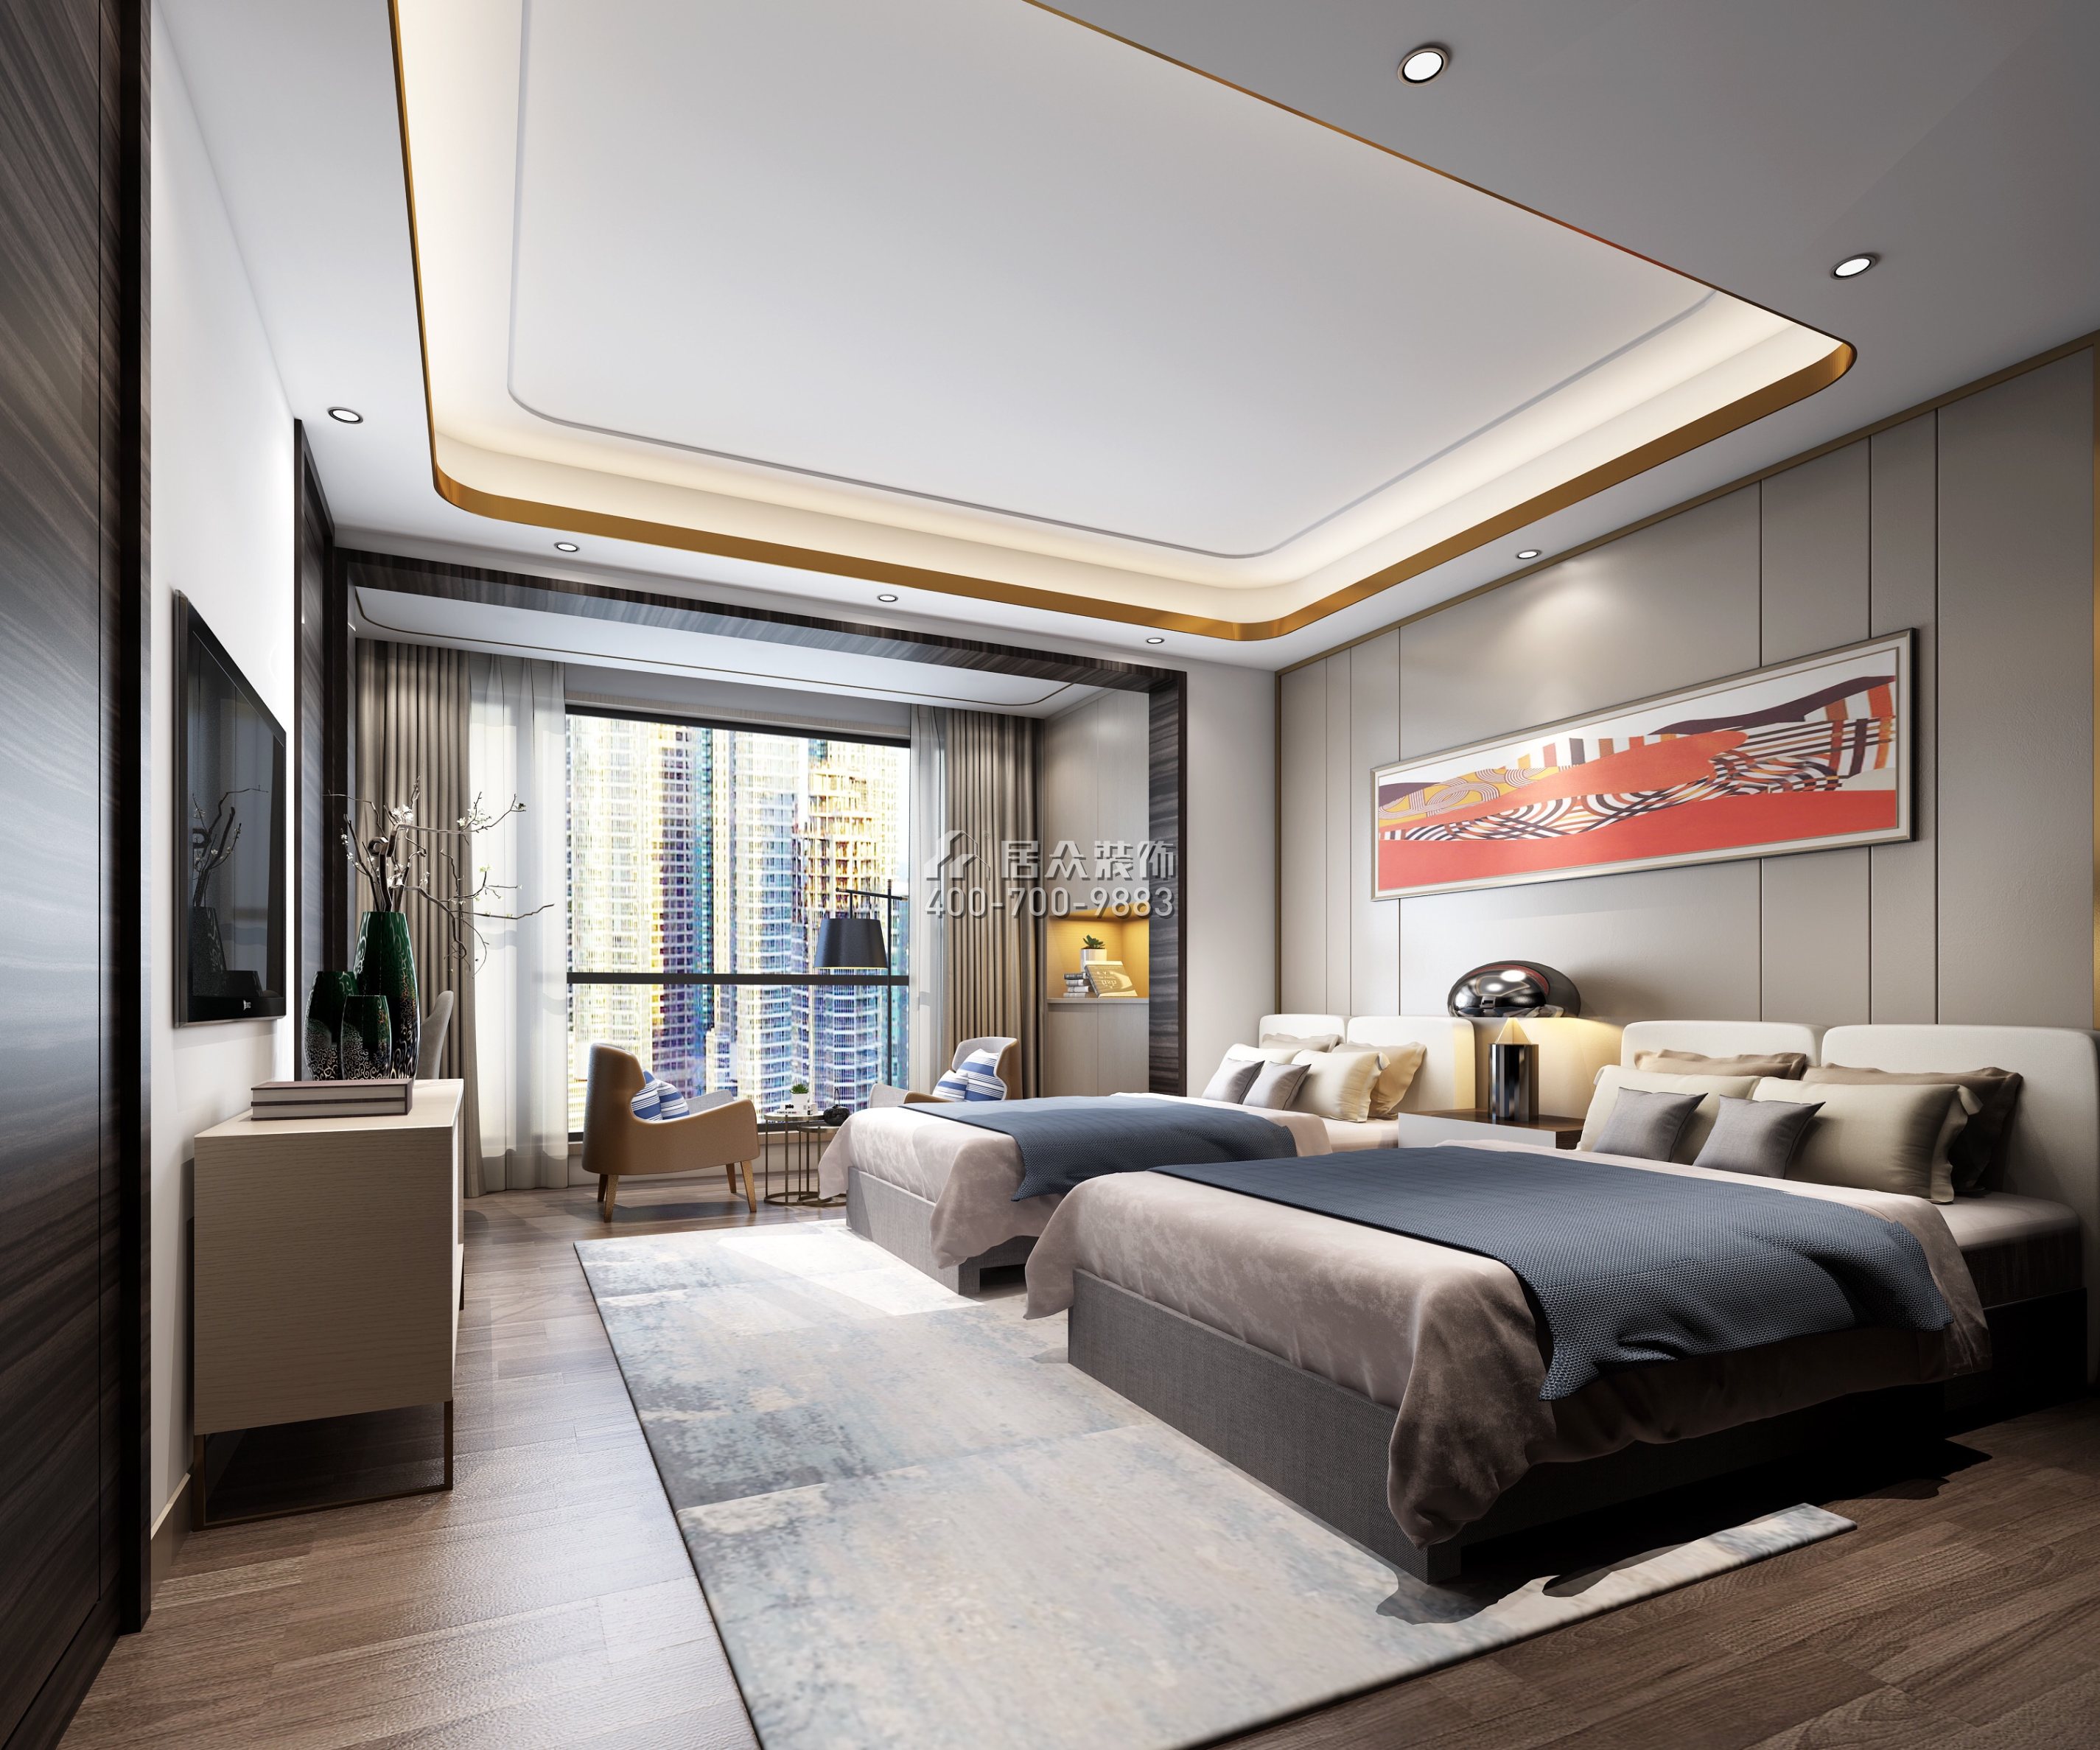 安柏丽晶180平方米现代简约风格平层户型卧室装修效果图